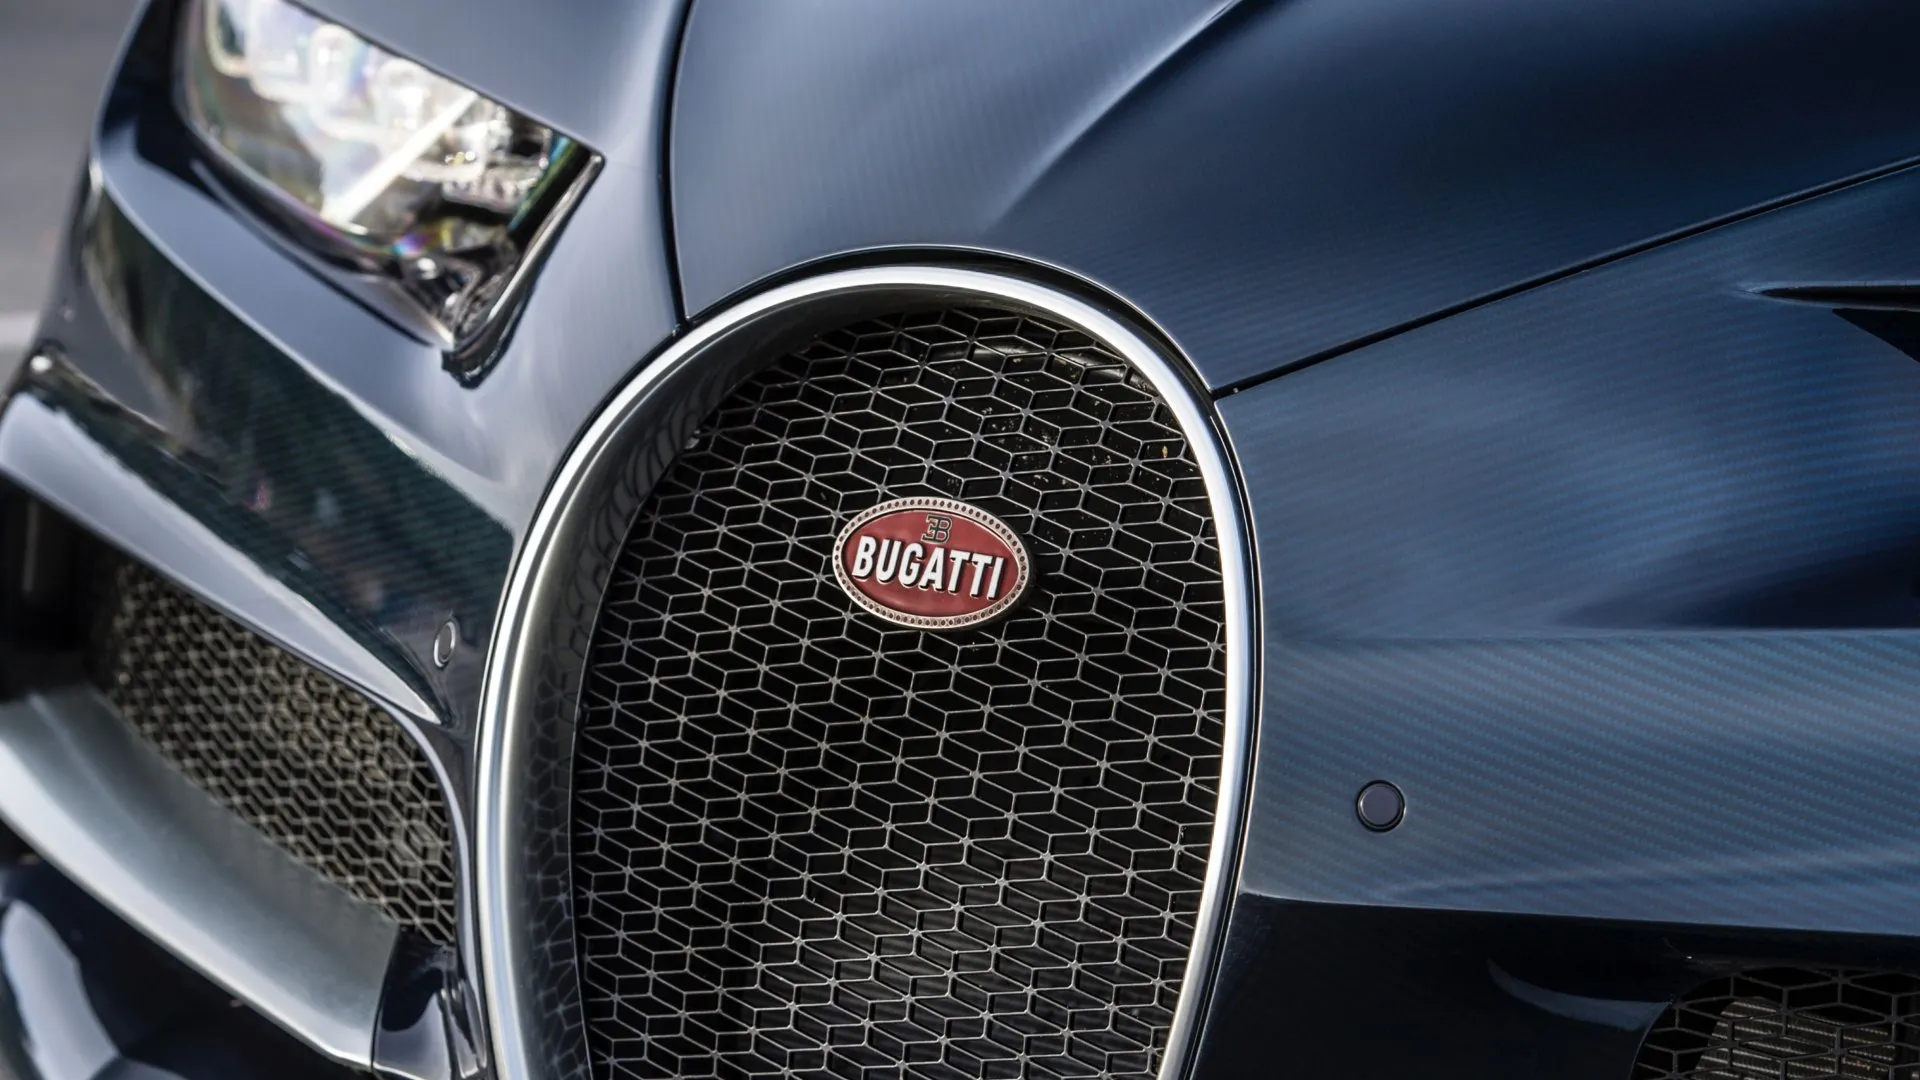 El próximo Bugatti será híbrido y estará listo en 2027